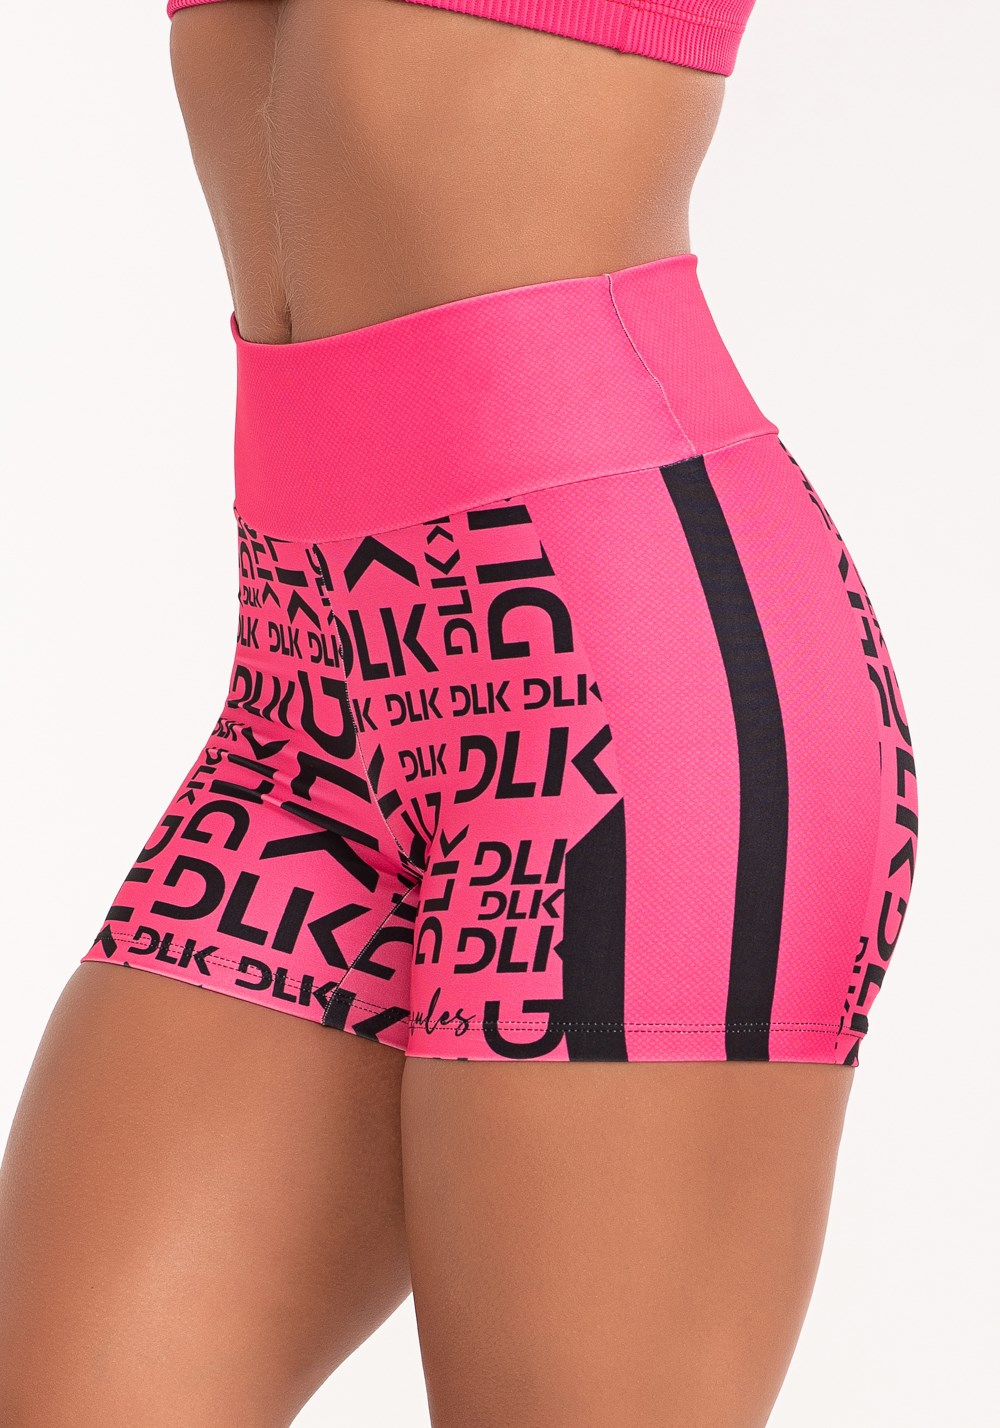 Short fitness feminino estampado dlk frases stripes pink printed